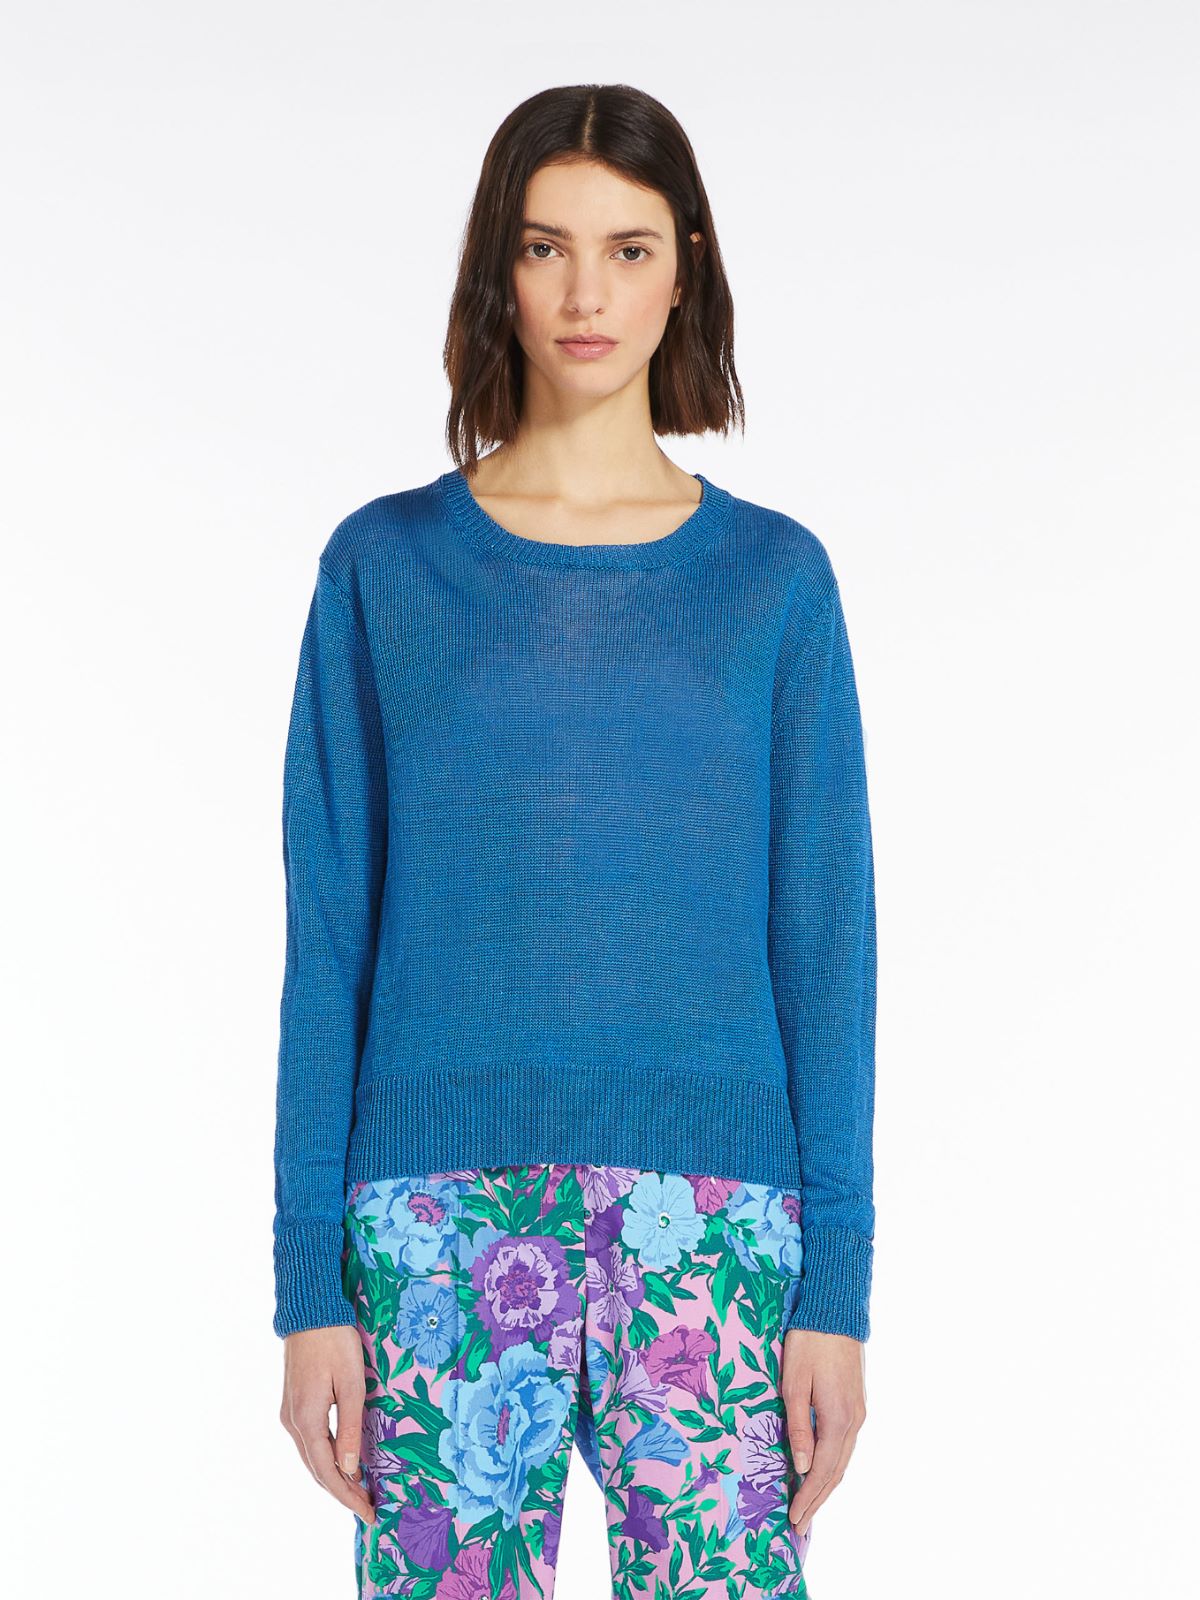 Linen knit jumper - BLUE AZURE - Weekend Max Mara - 2